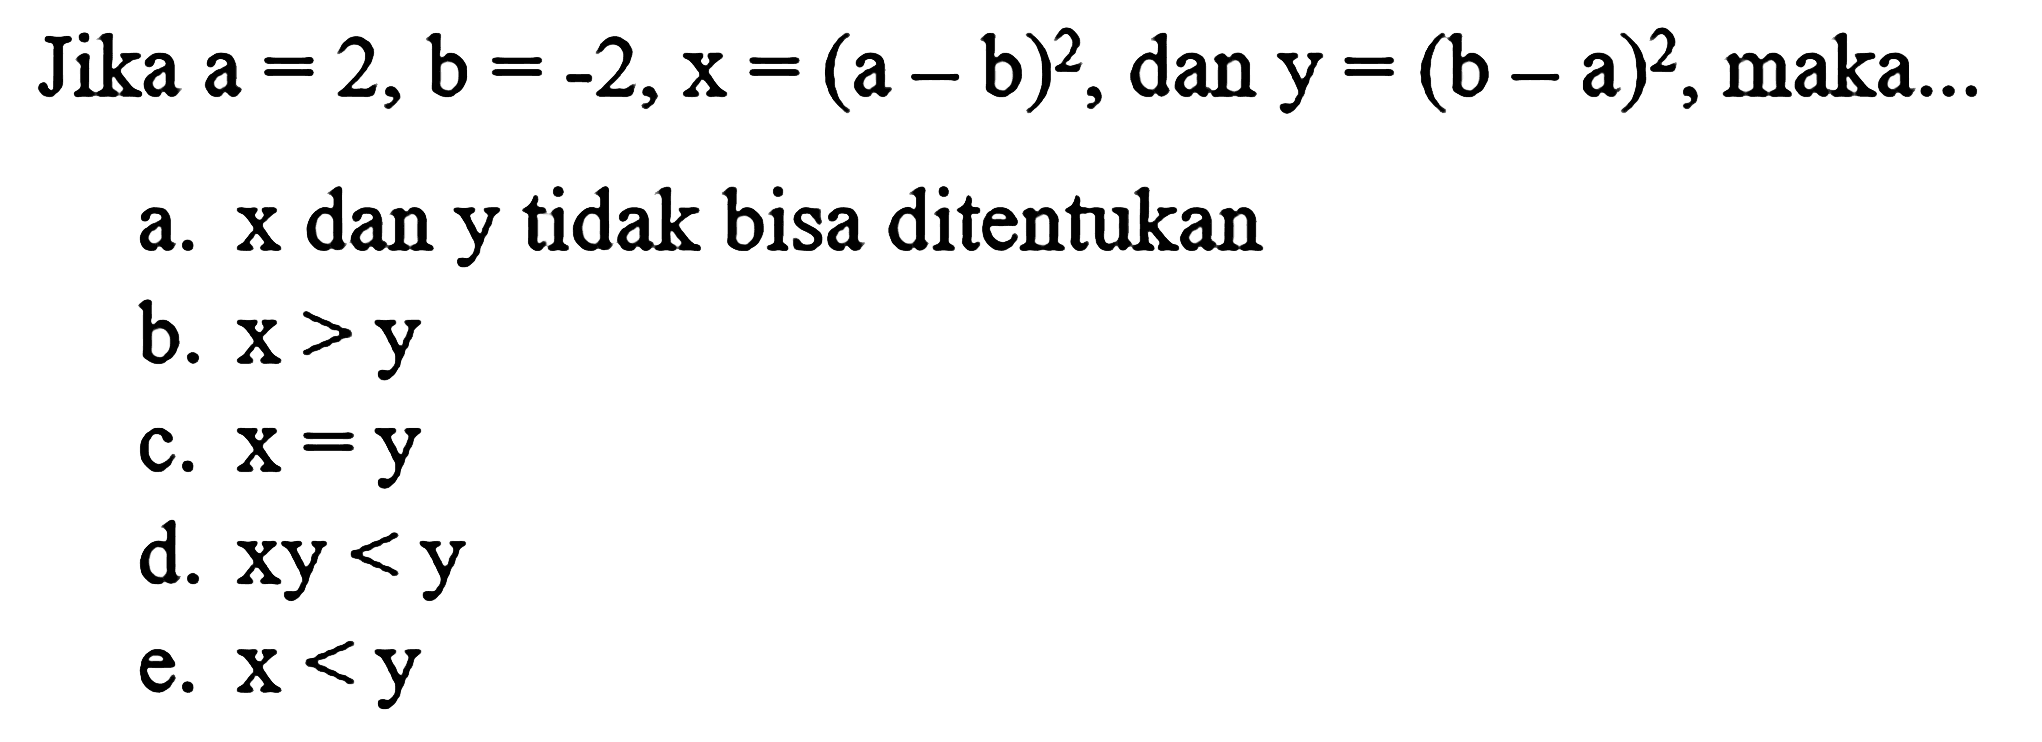 Jika  a=2, b=-2, x=(a-b)^(2) , dan  y=(b-a)^(2) , maka...
a.  x  dan  y  tidak bisa ditentukan
b.  x>y 
c.  x=y 
d.  x y<y 
e.  x<y 